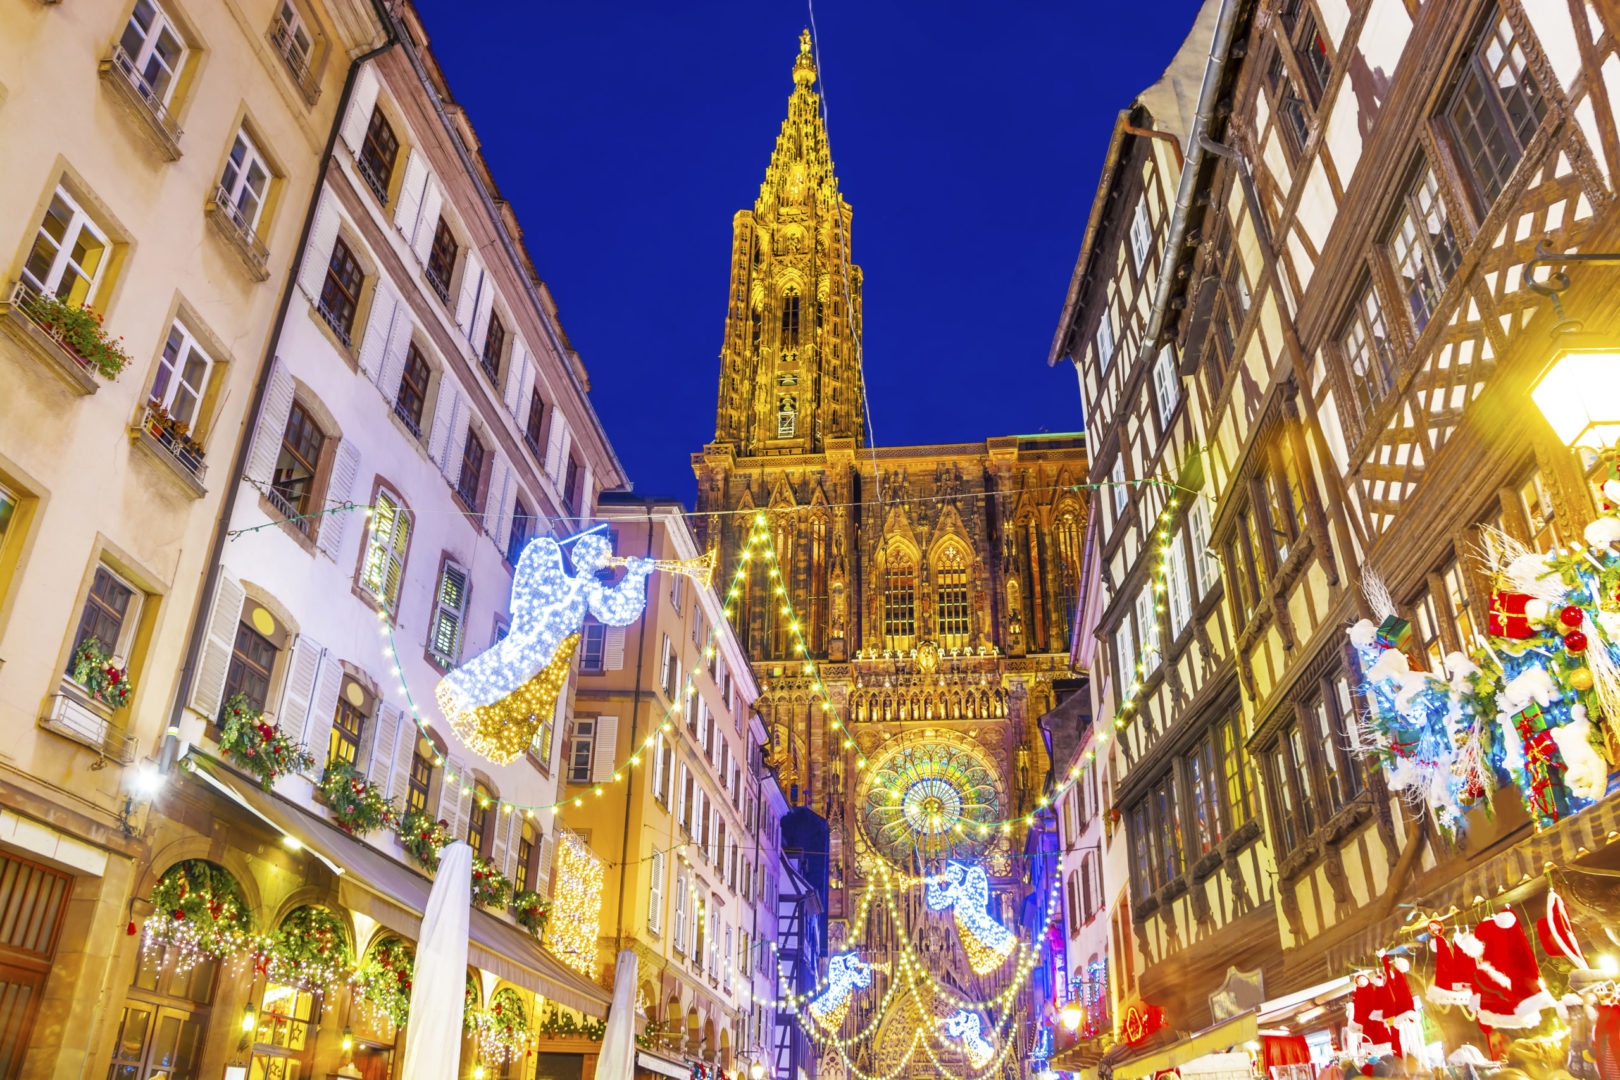 Weihnachtsbeleuchtung in Straßburg, Elsass